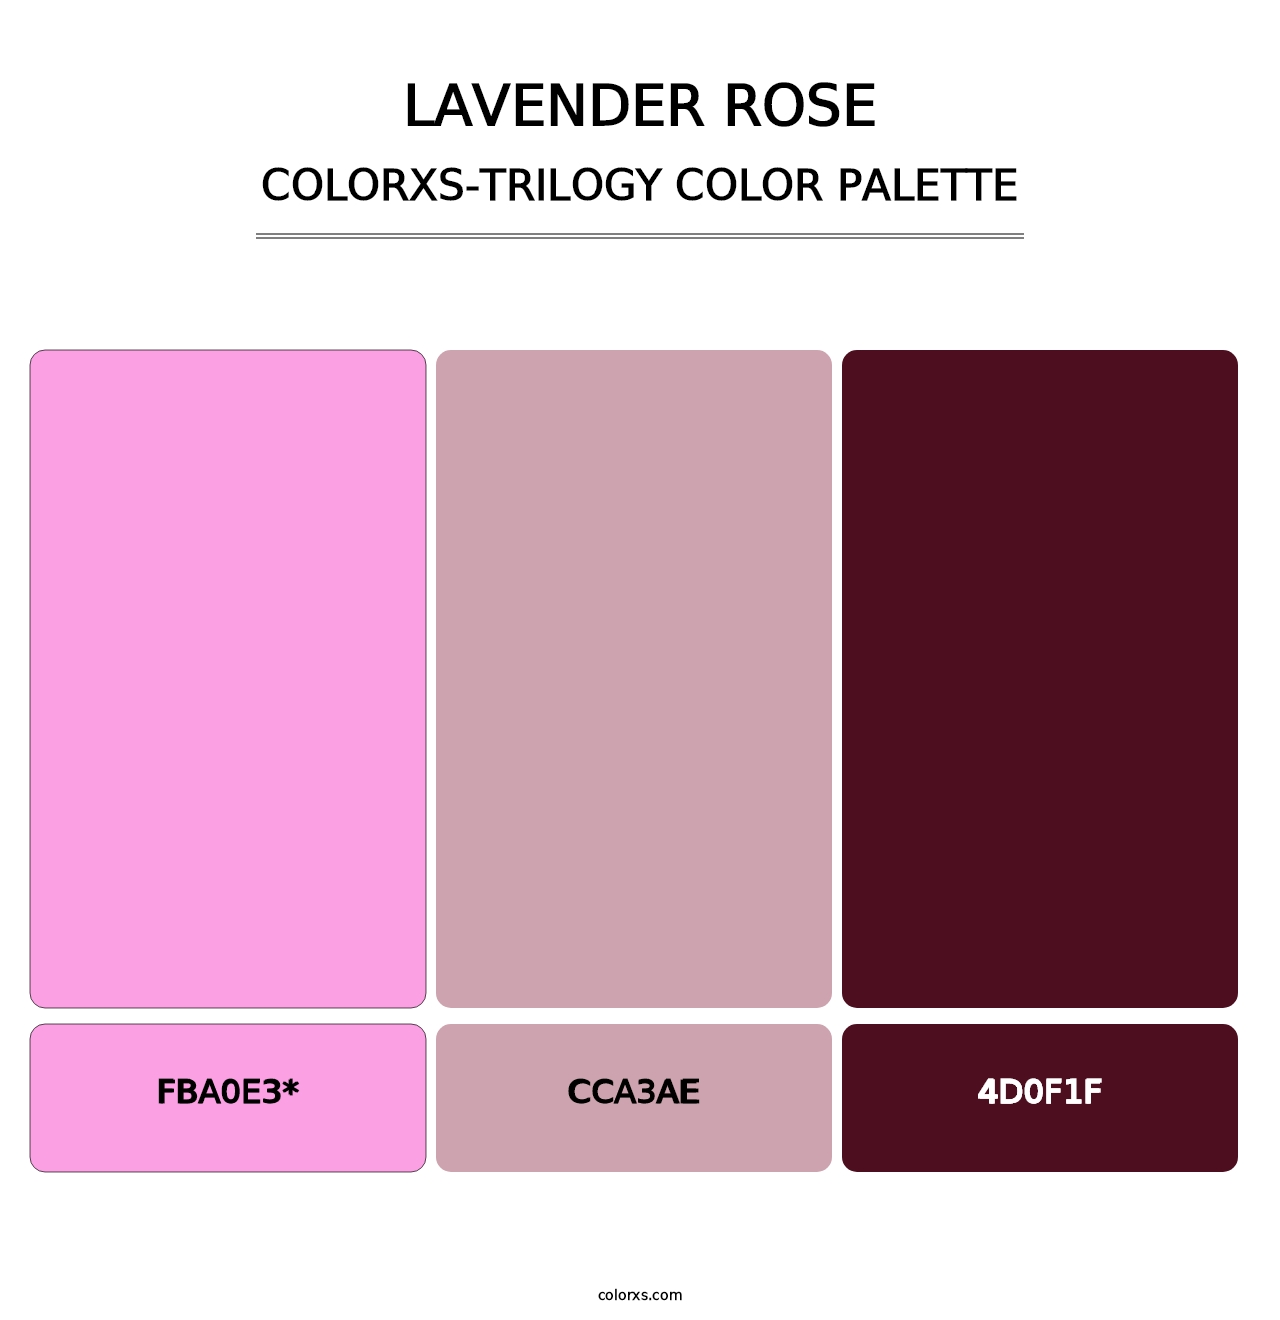 Lavender Rose - Colorxs Trilogy Palette